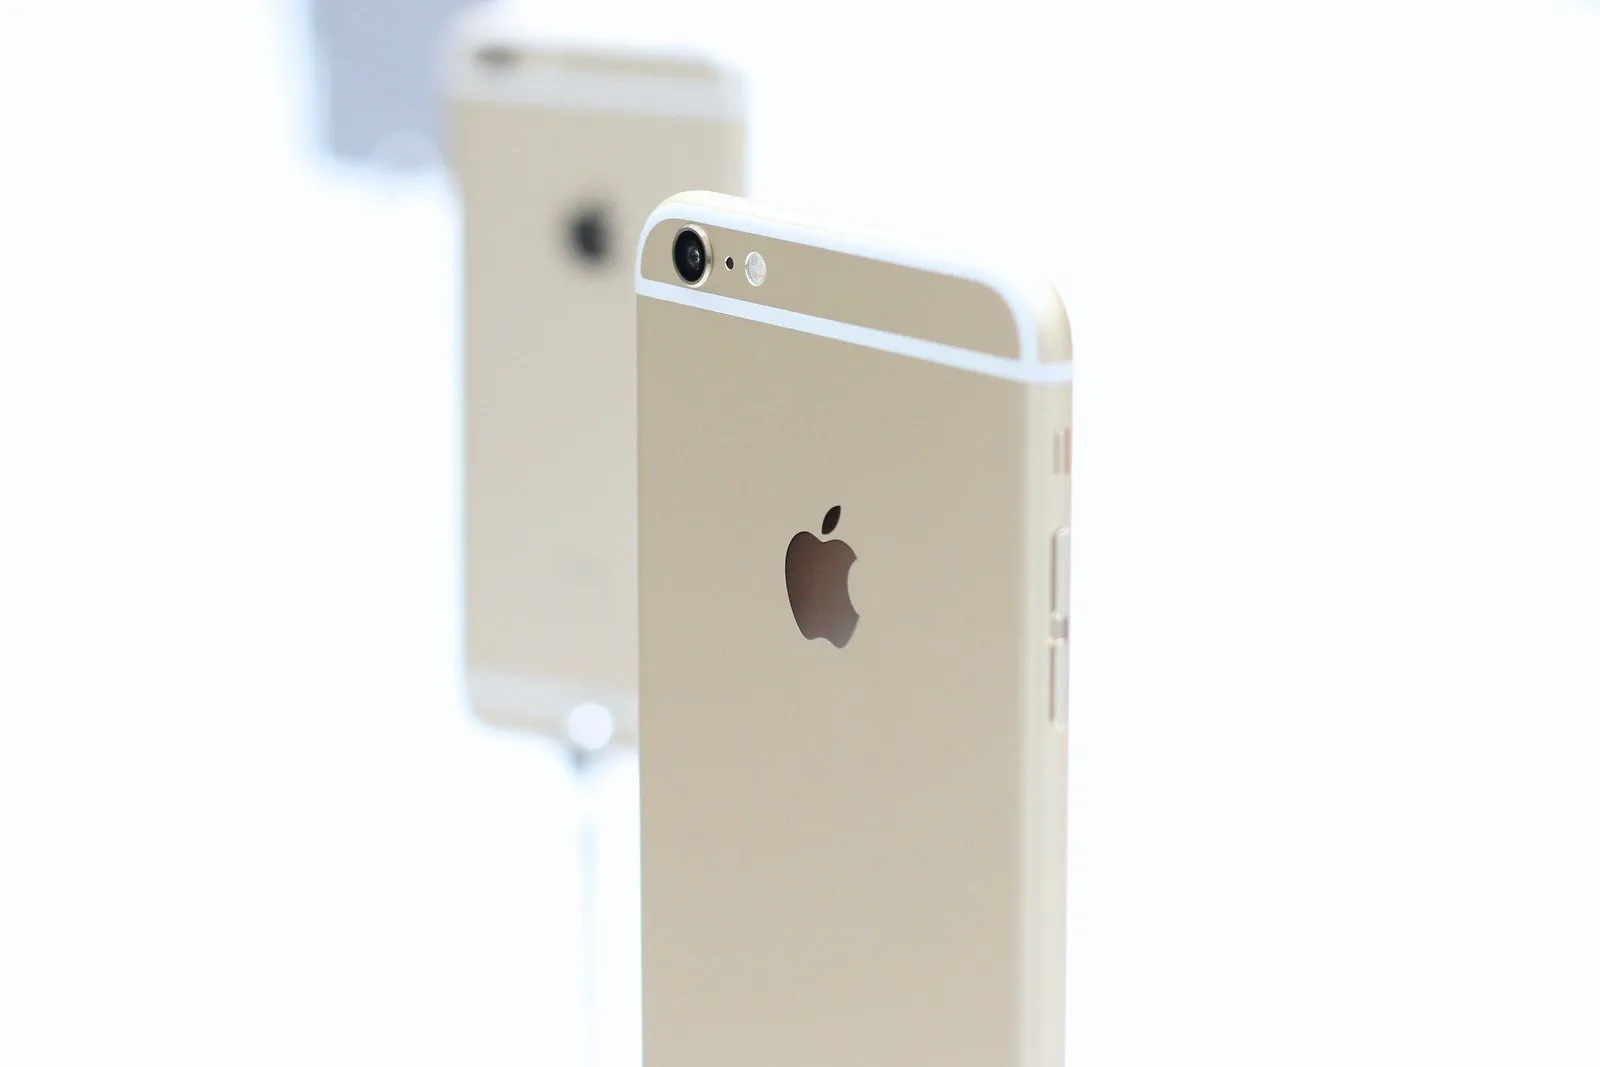 Apple reconoció al iPhone 6 como un producto "vintage"